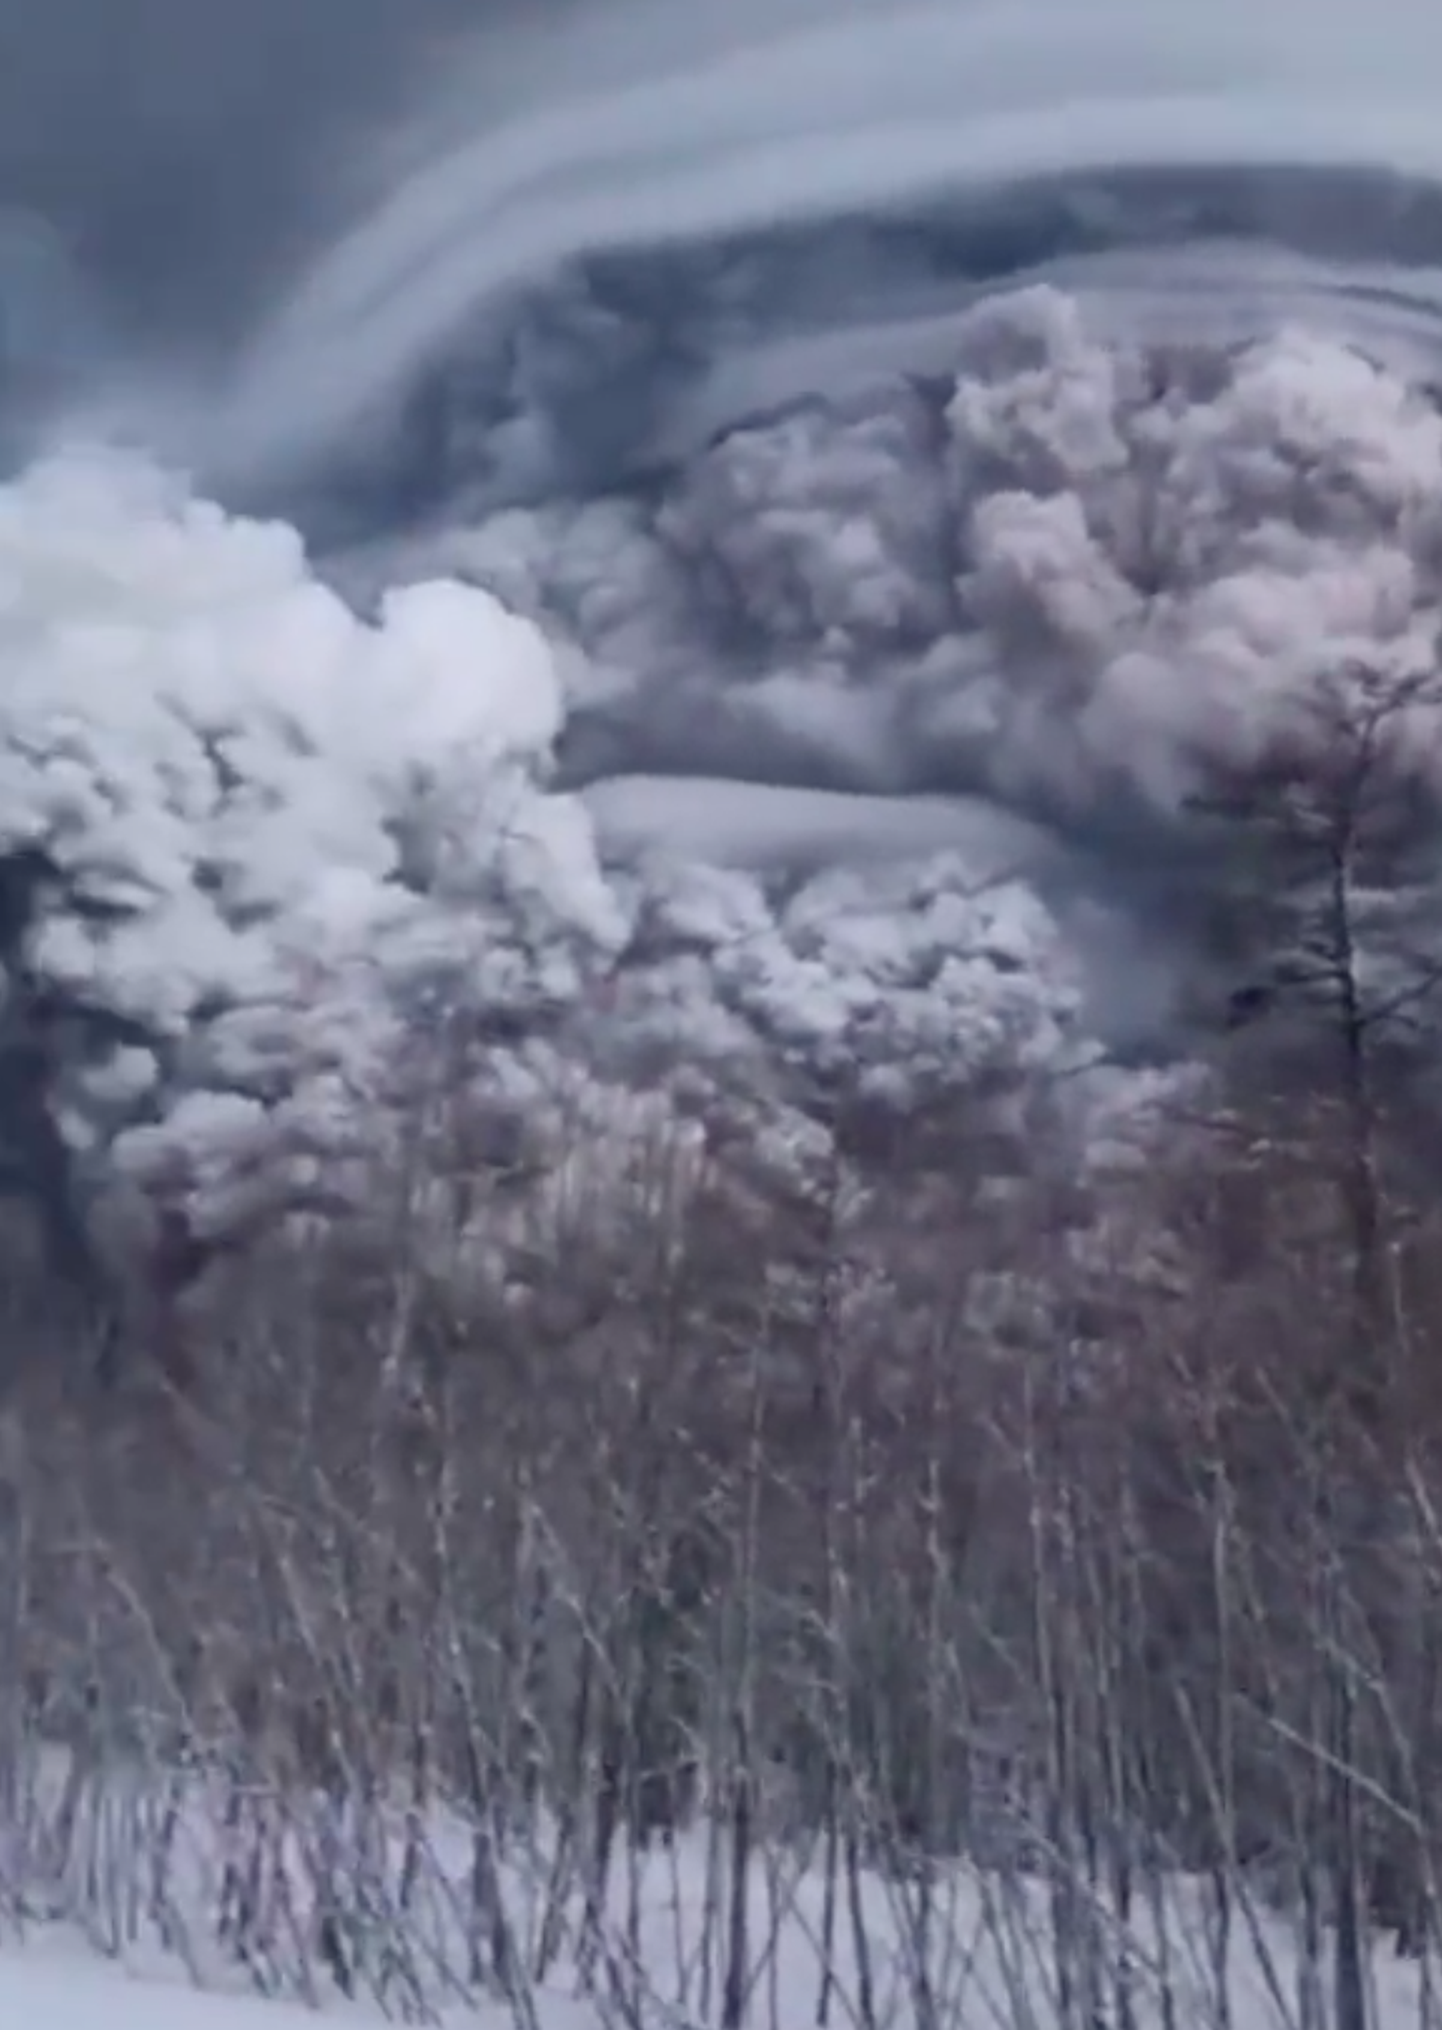 Извержение вулкана Шивелуч на Камчатке, Россия